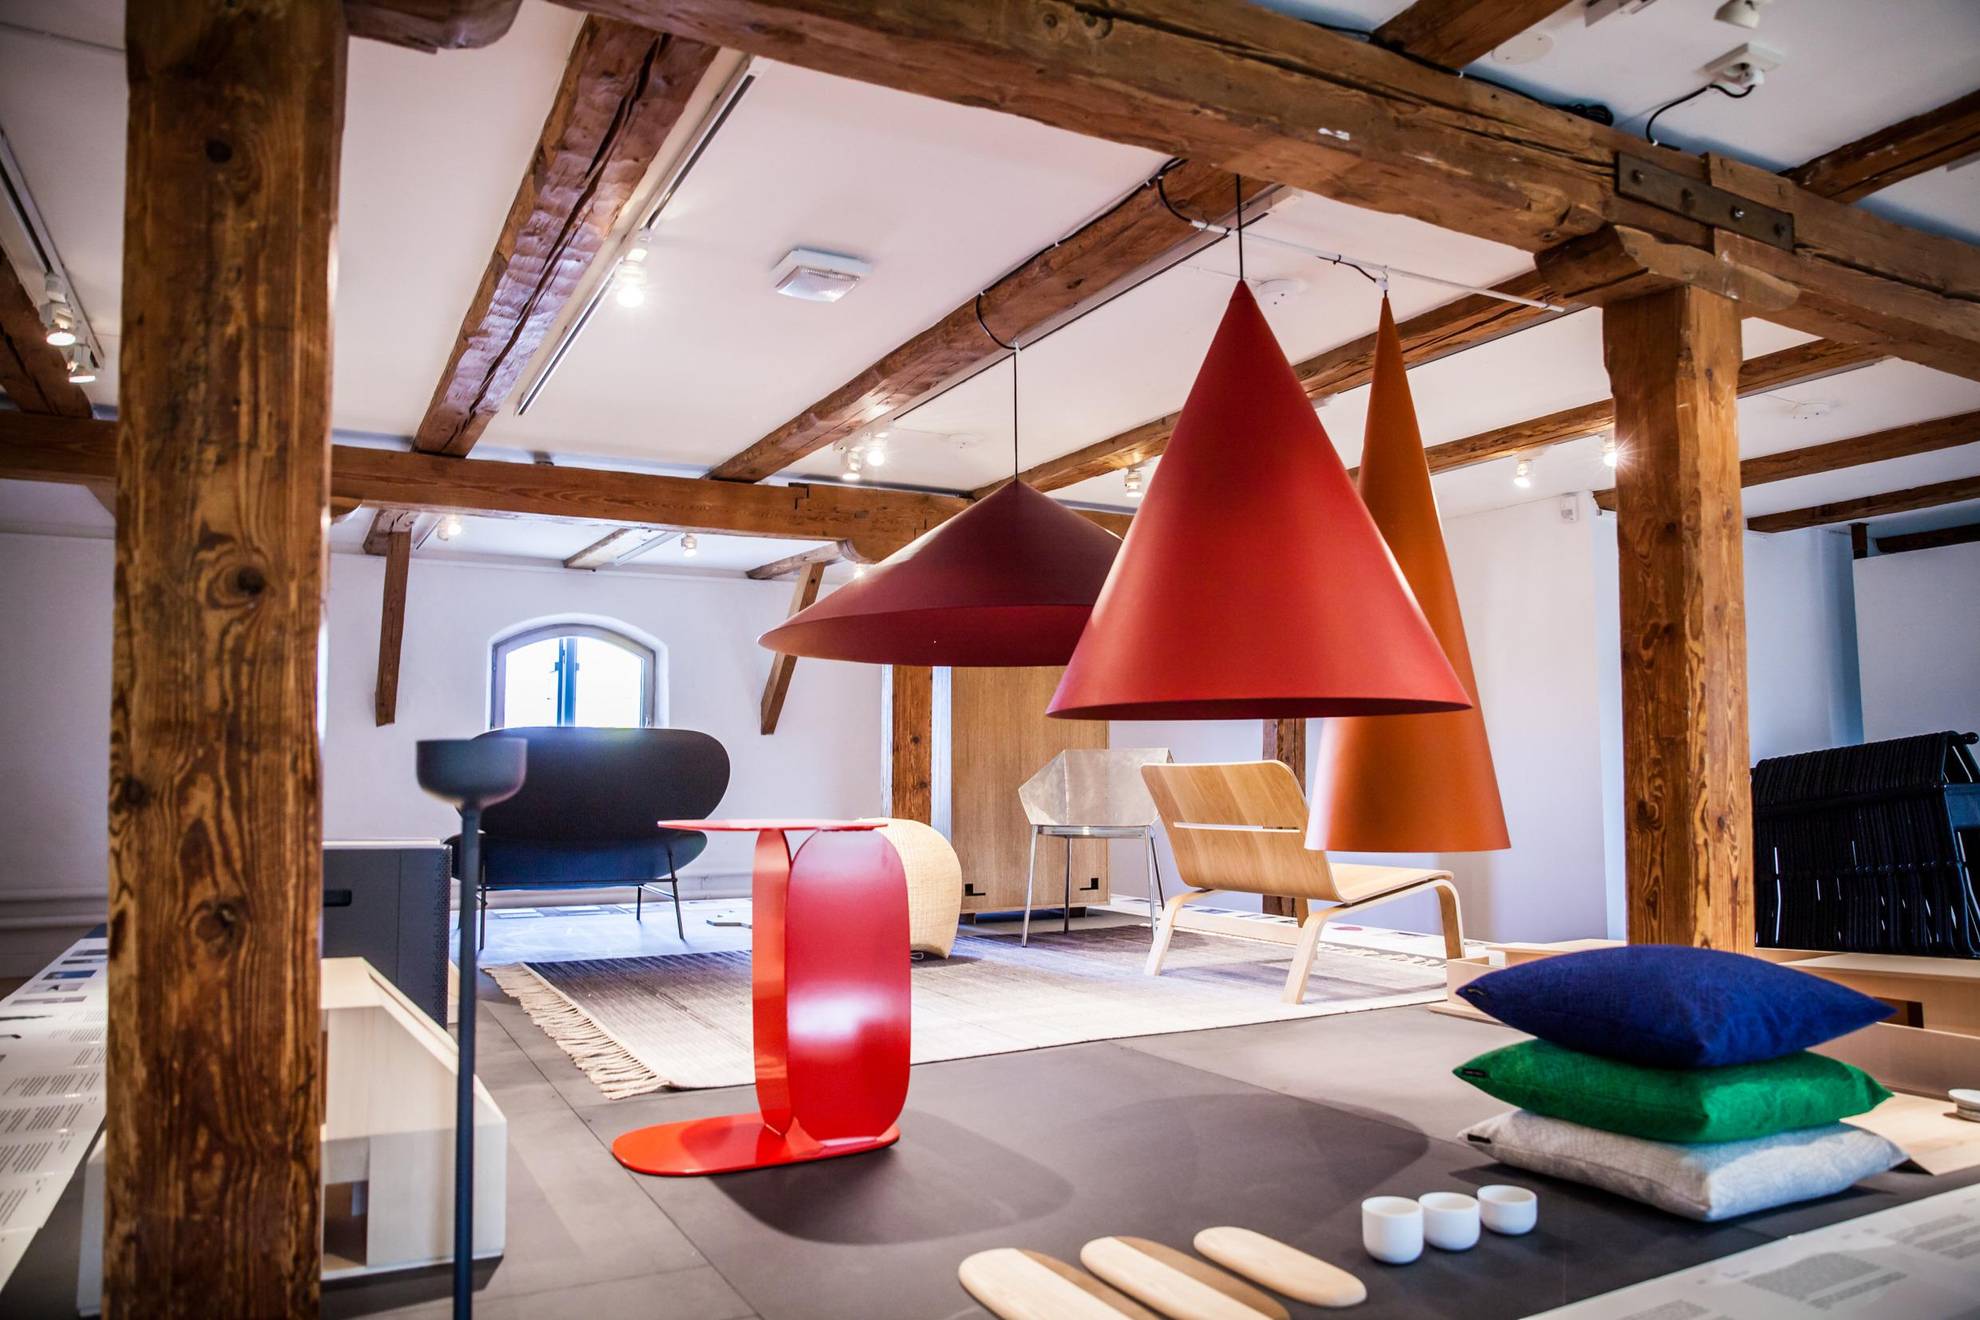 Ein Dachzimmer mit Holzbalken. Bunte Designobjekte im Raum, wie Lampen, Stühle und Kissen.